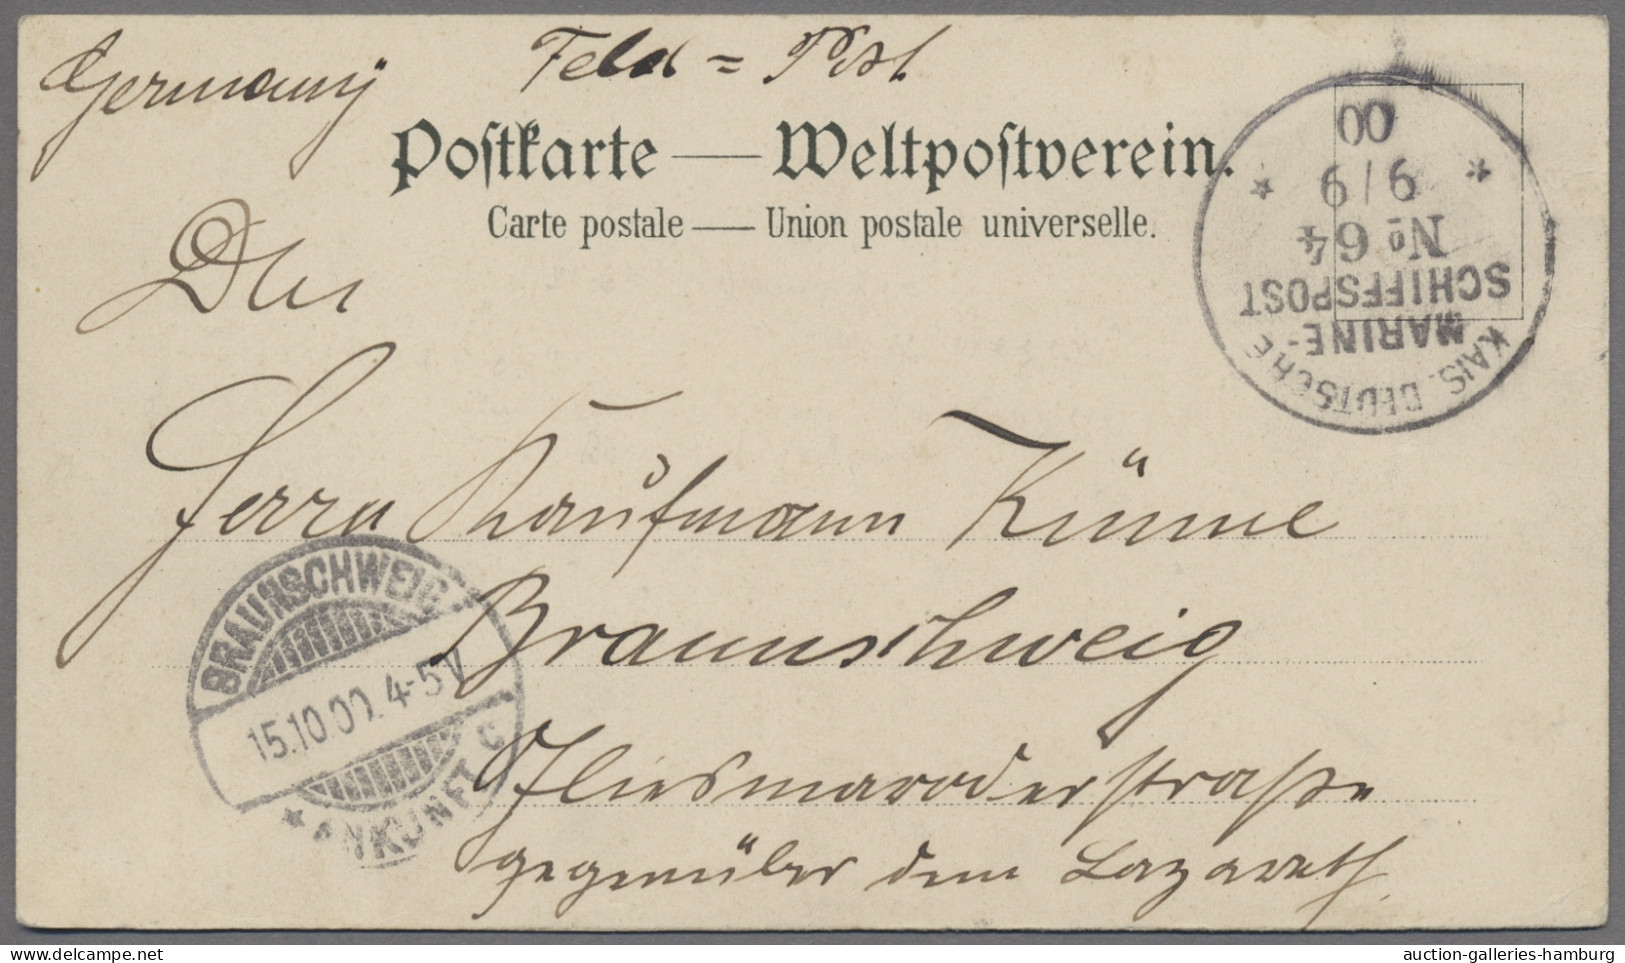 Deutsche Post In China - Stempel: 1900, FELDPOST BOXERAUFSTAND (I. Transportstaf - China (offices)